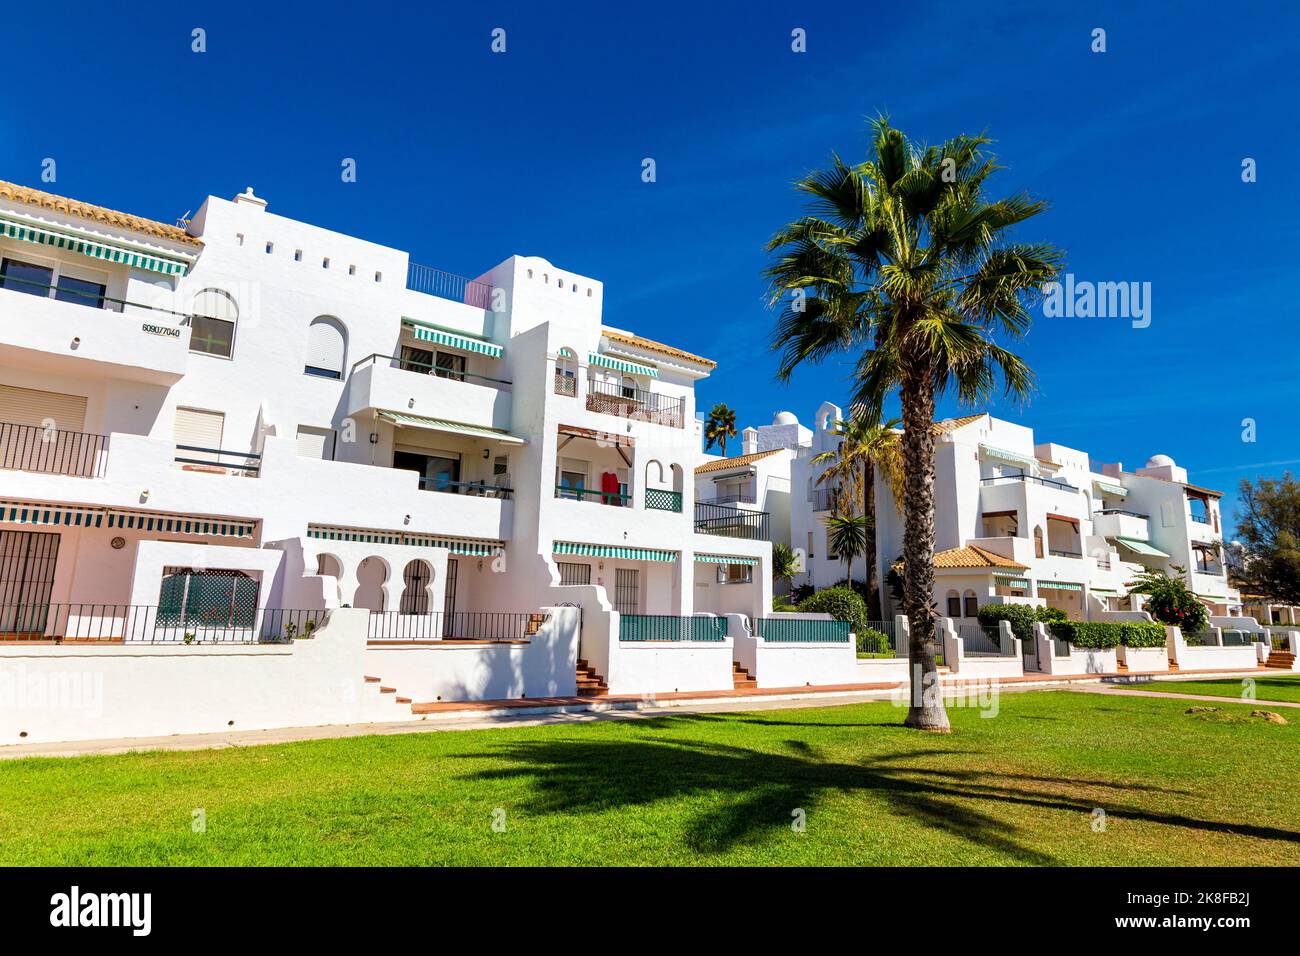 Casas encaladas de estilo morisco a lo largo de Playa de la Barrosa, Costa de la Luz, España Foto de stock